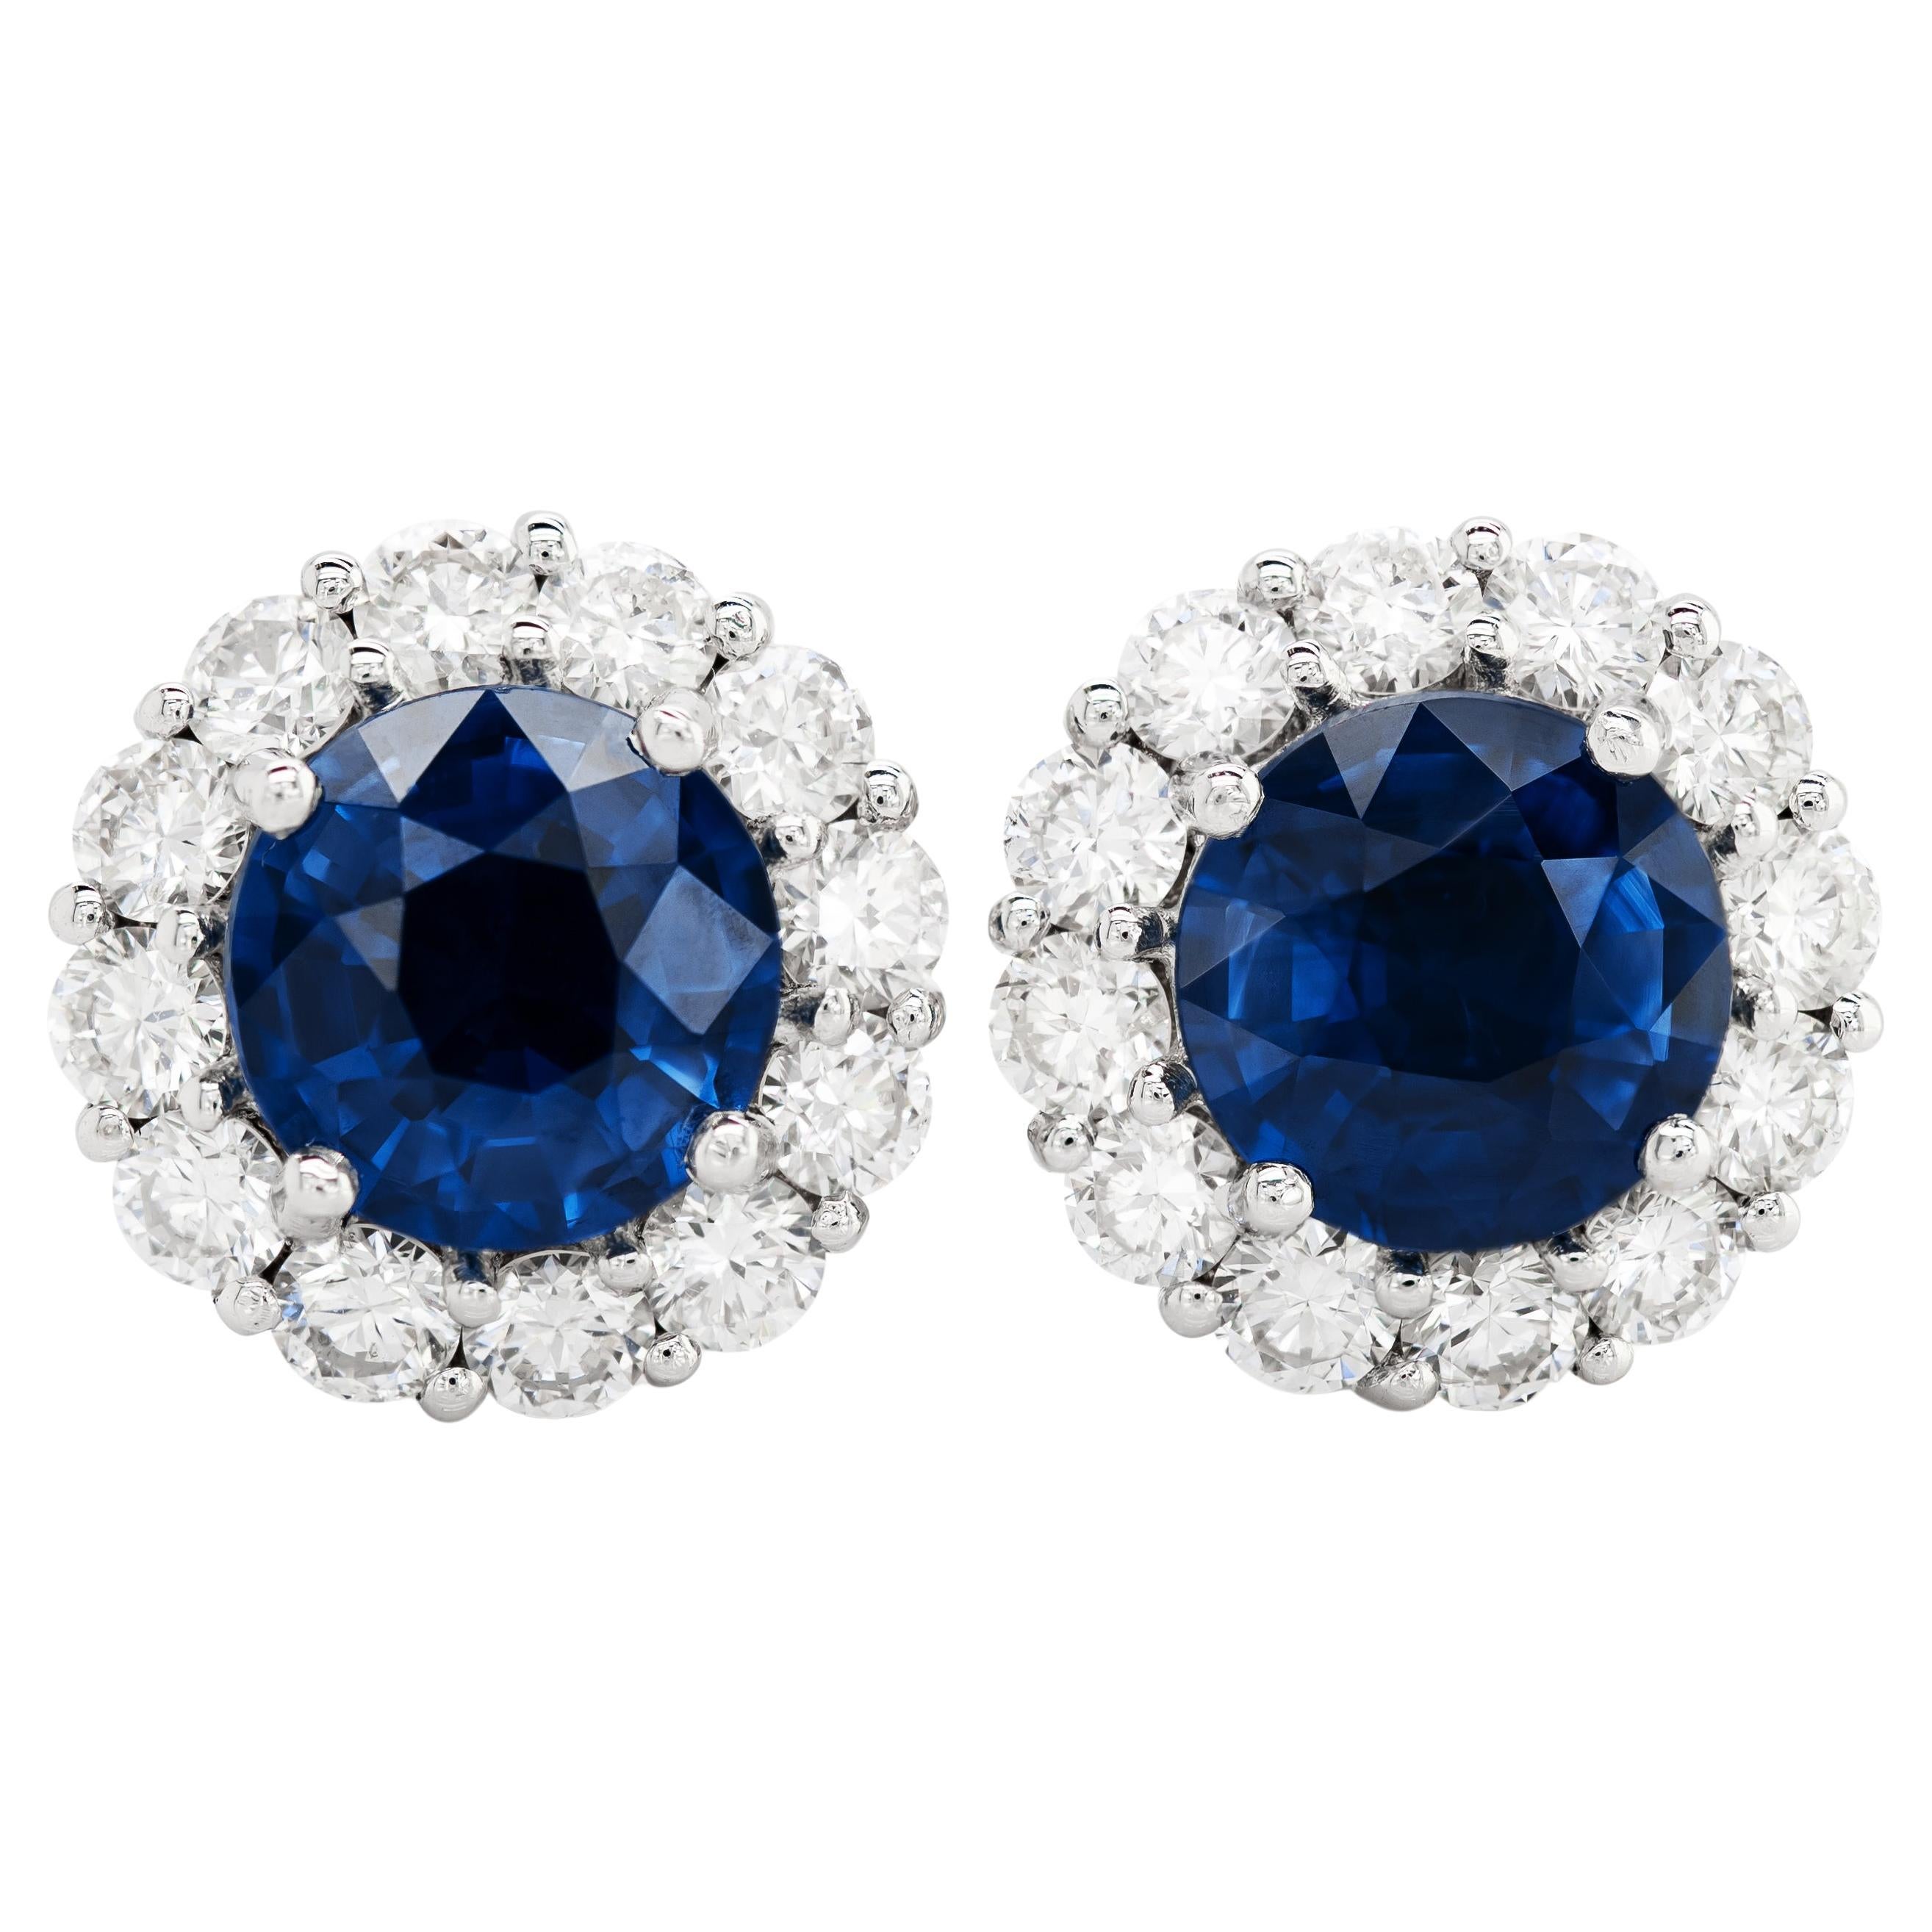 Natürliche blaue Saphire 2.60 Karat  Ohrringe aus 18 Karat Weißgold mit Diamanten besetzt